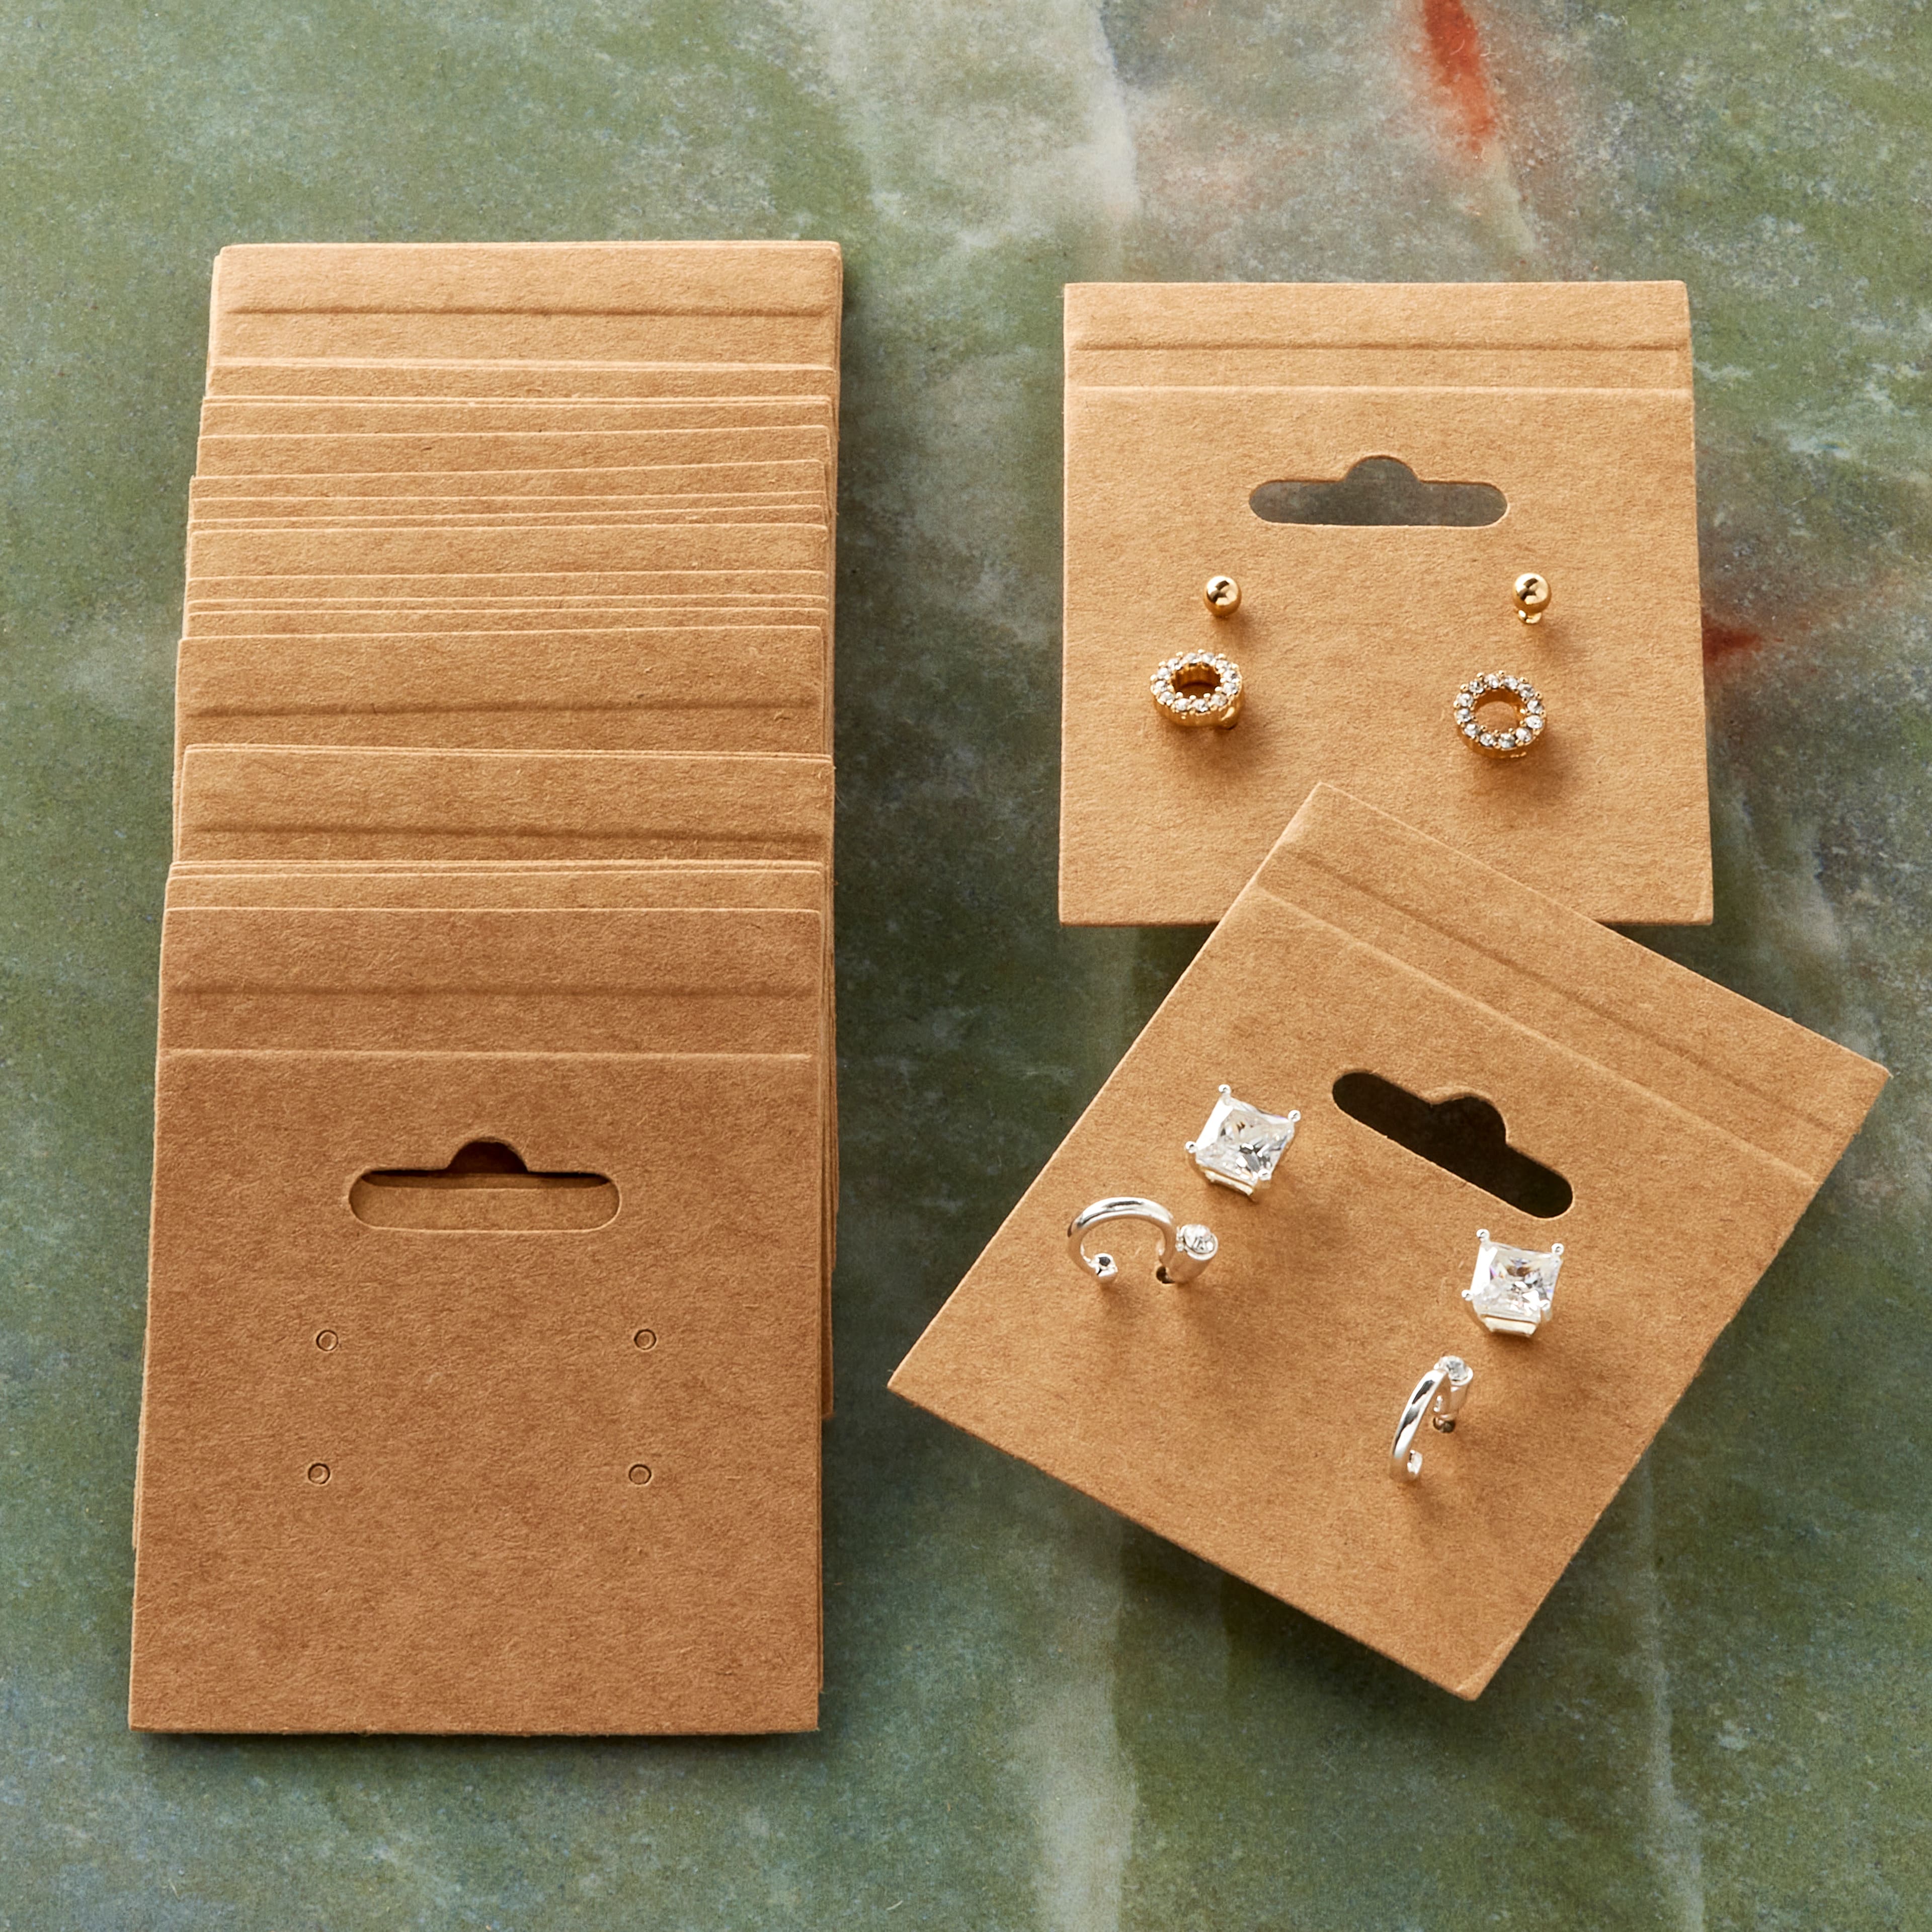 12 Packs: 75 ct. (900 total) Kraft Paper Earring Cards by Bead Landing&#x2122;